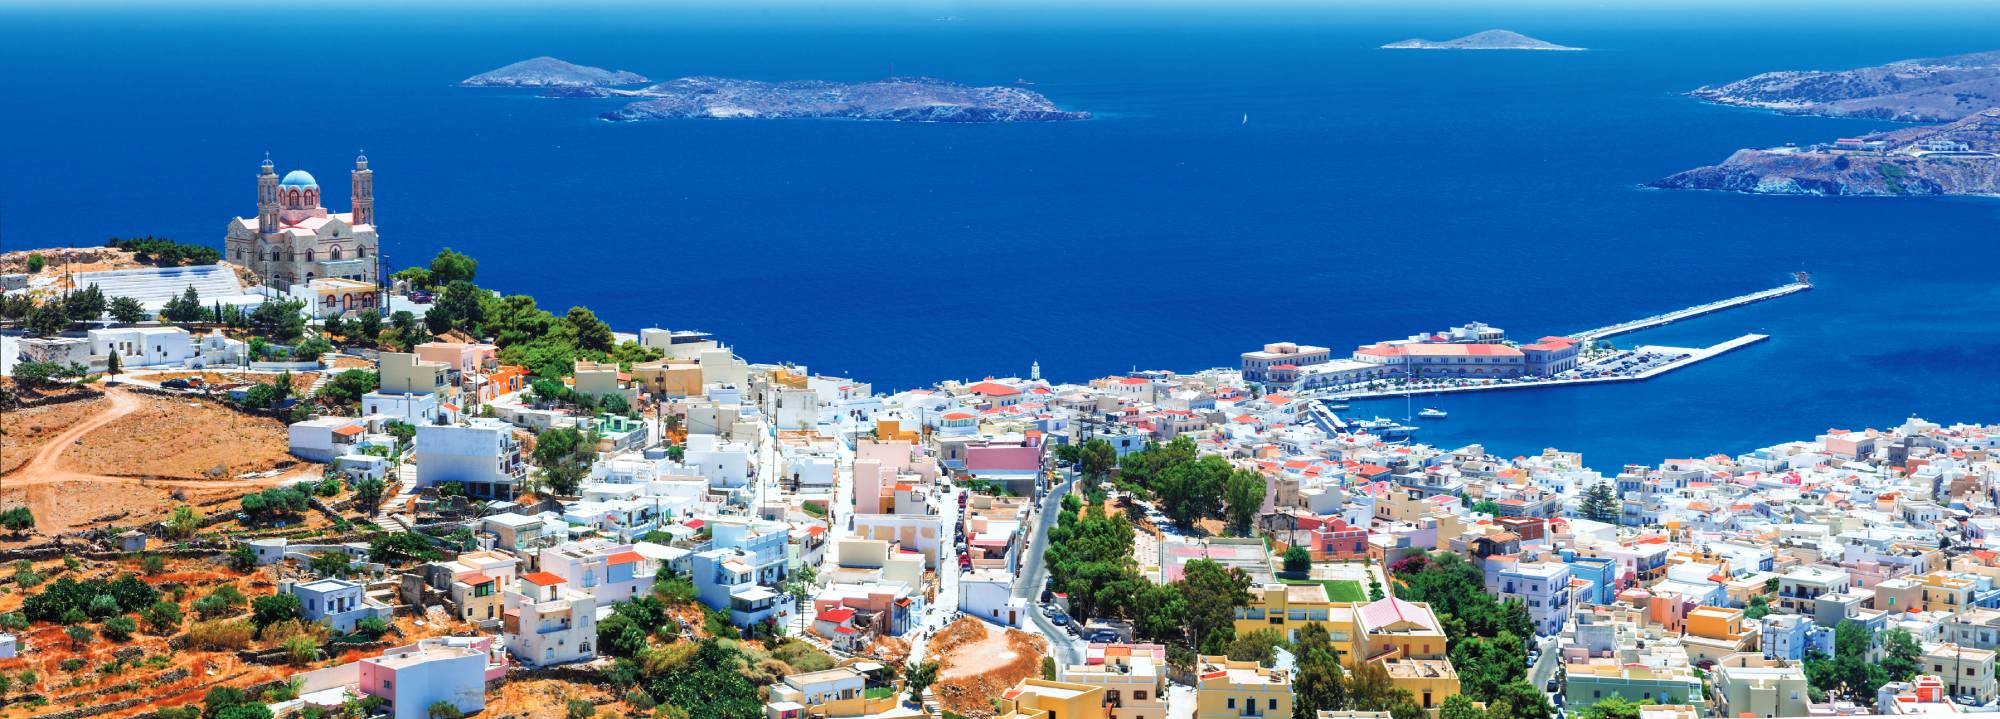 Μουσεία ελληνικών νησιών που αξίζει να επισκεφτείτε στις διακοπές σας